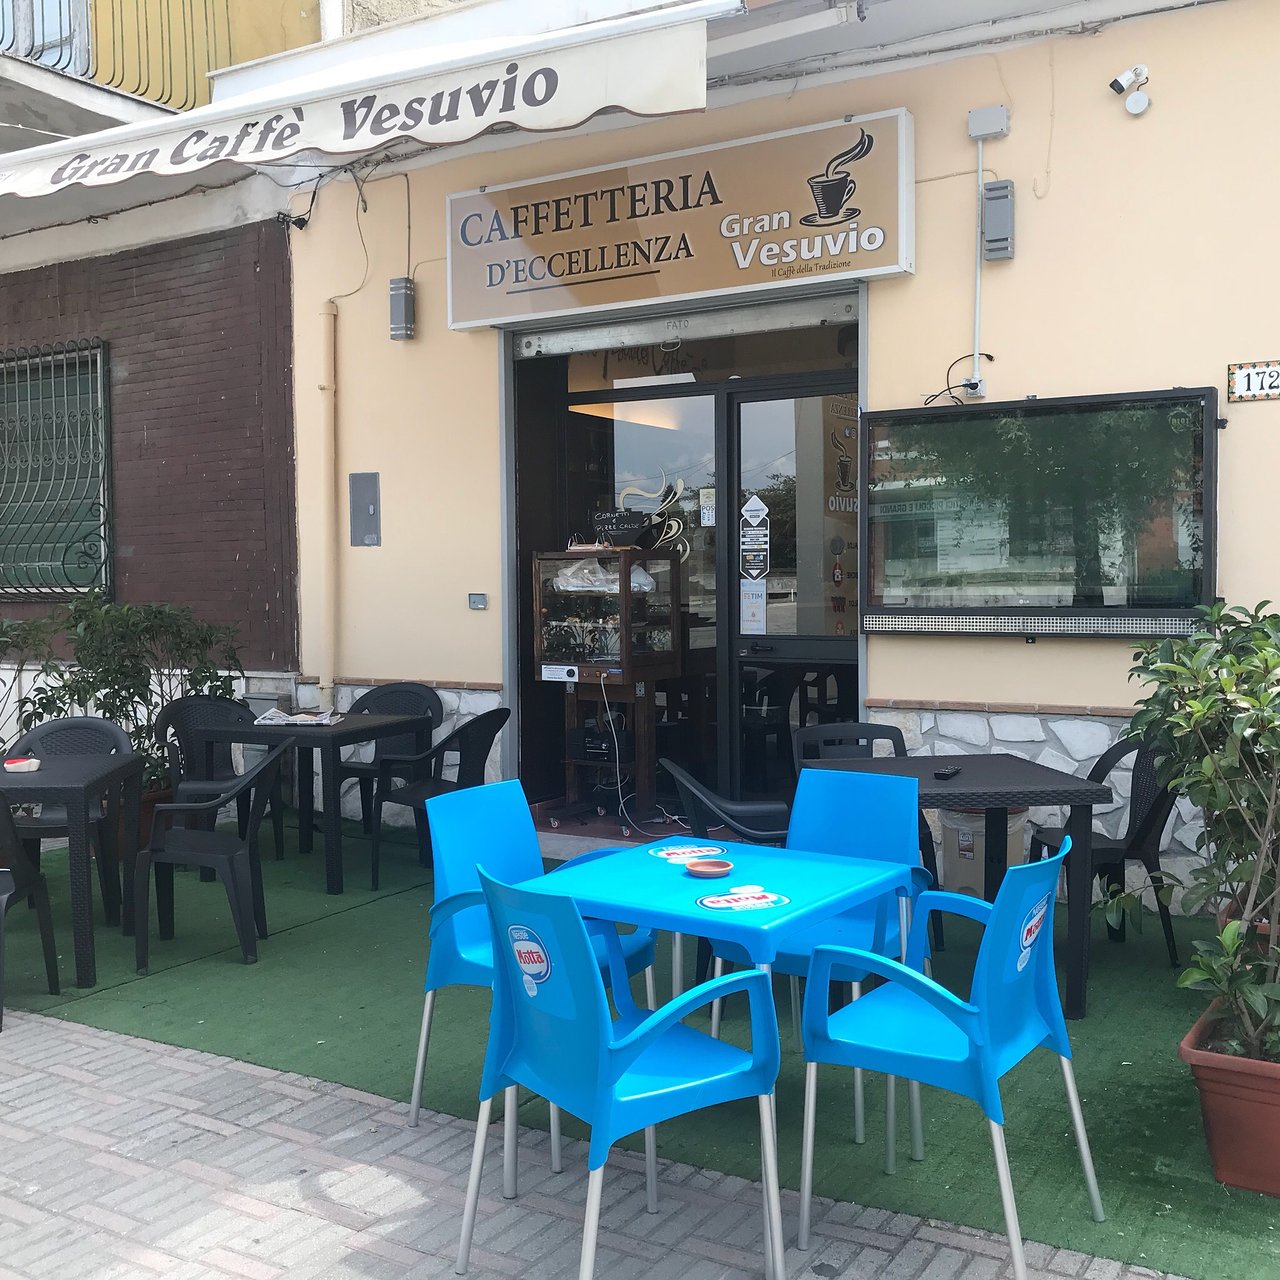 Gran Vesuvio Caffe, San Cipriano d'Aversa